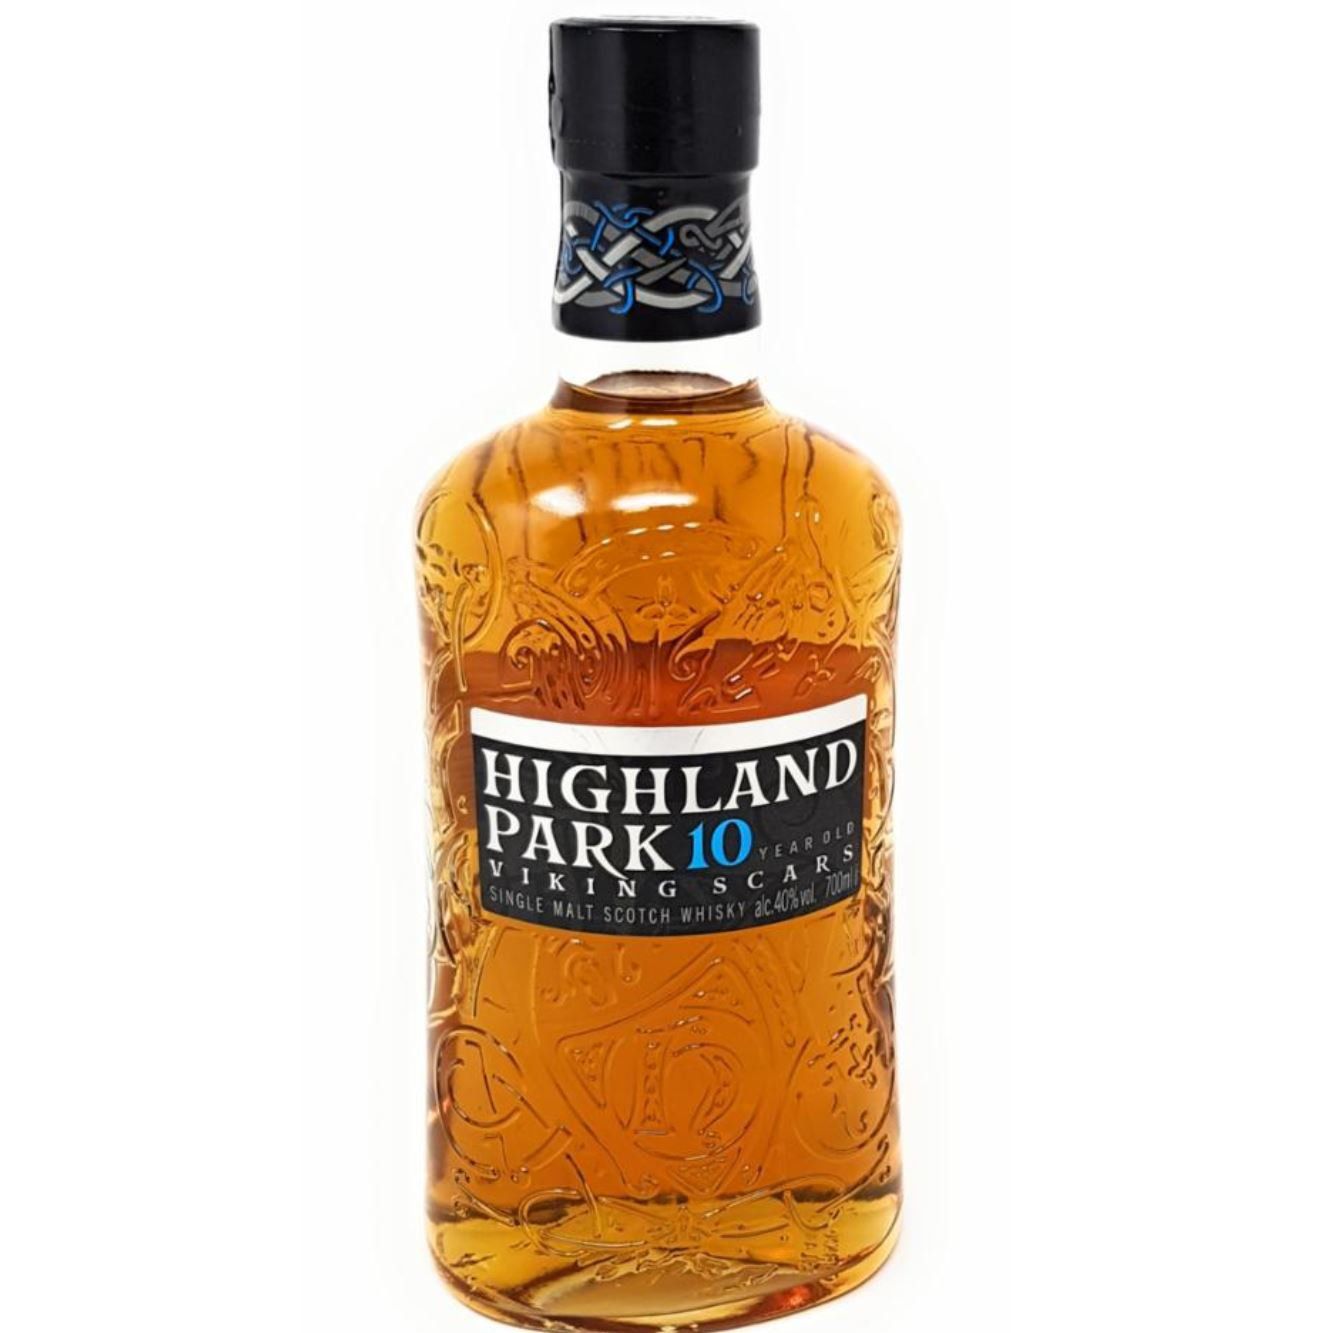 Ausverkauft! Highland Park 10 Years Old Single Malt Scotch Whisky für 29,99€ (statt 38€)